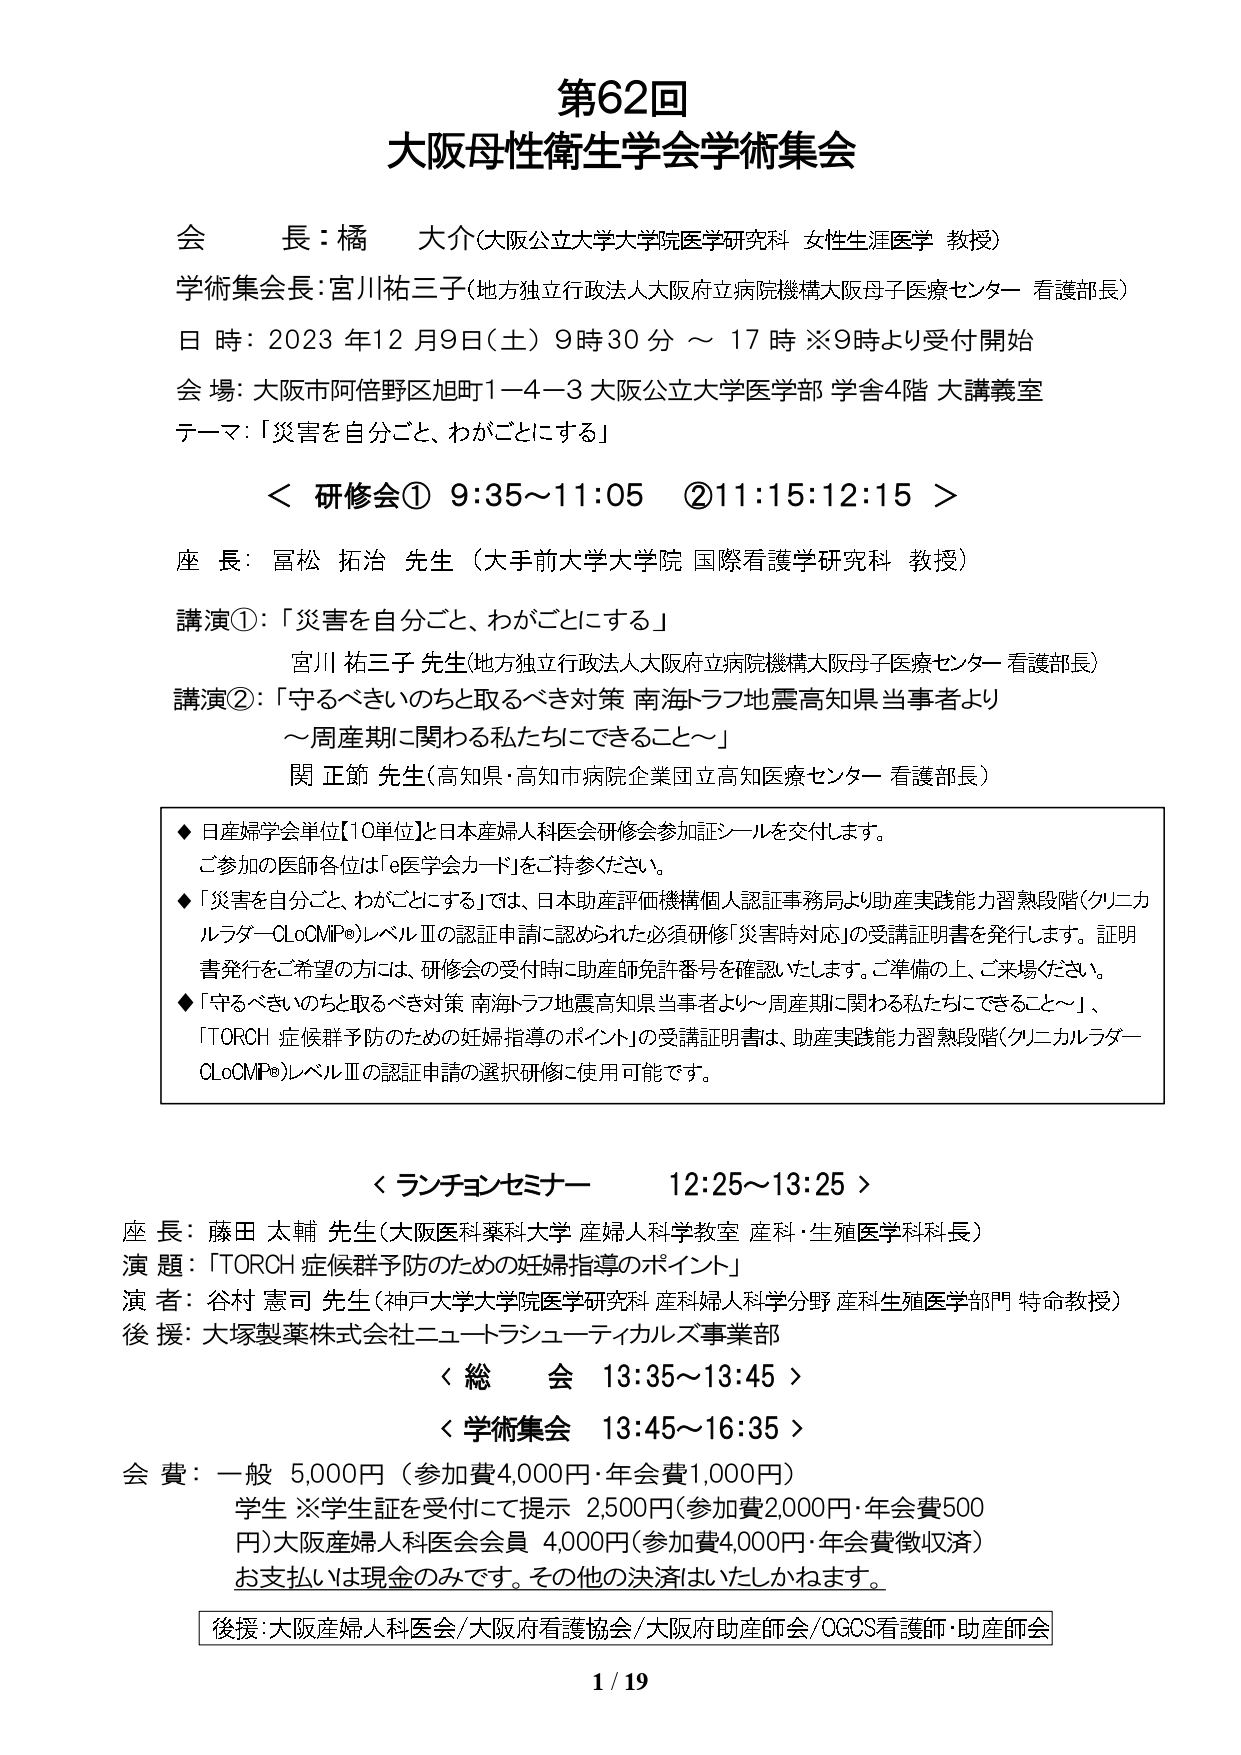 第62回大阪母性衛生学会のプログラムPDF